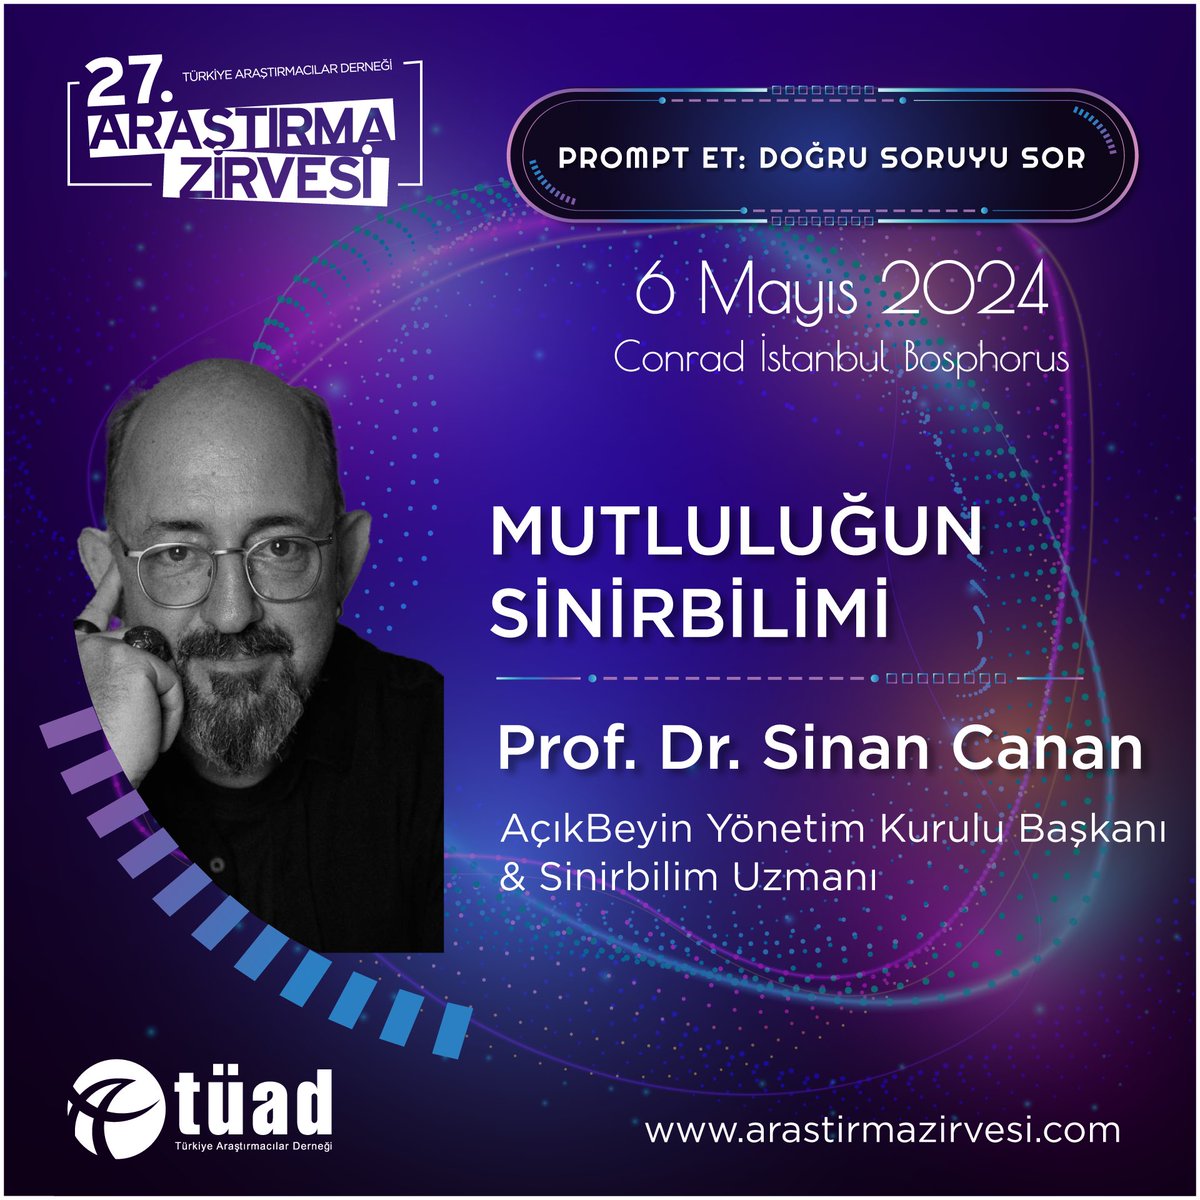 Prof. Dr. Sinan Canan 'Mutluluğun Sinirbilimi' başlıklı konuşması ile 6 Mayıs'ta 27.Araştırma Zirvesi'nde! #araştırmazirvesi2024 #doğrusoruyusor #6mayıs @SinanCanan @AcikBeyinEgitim